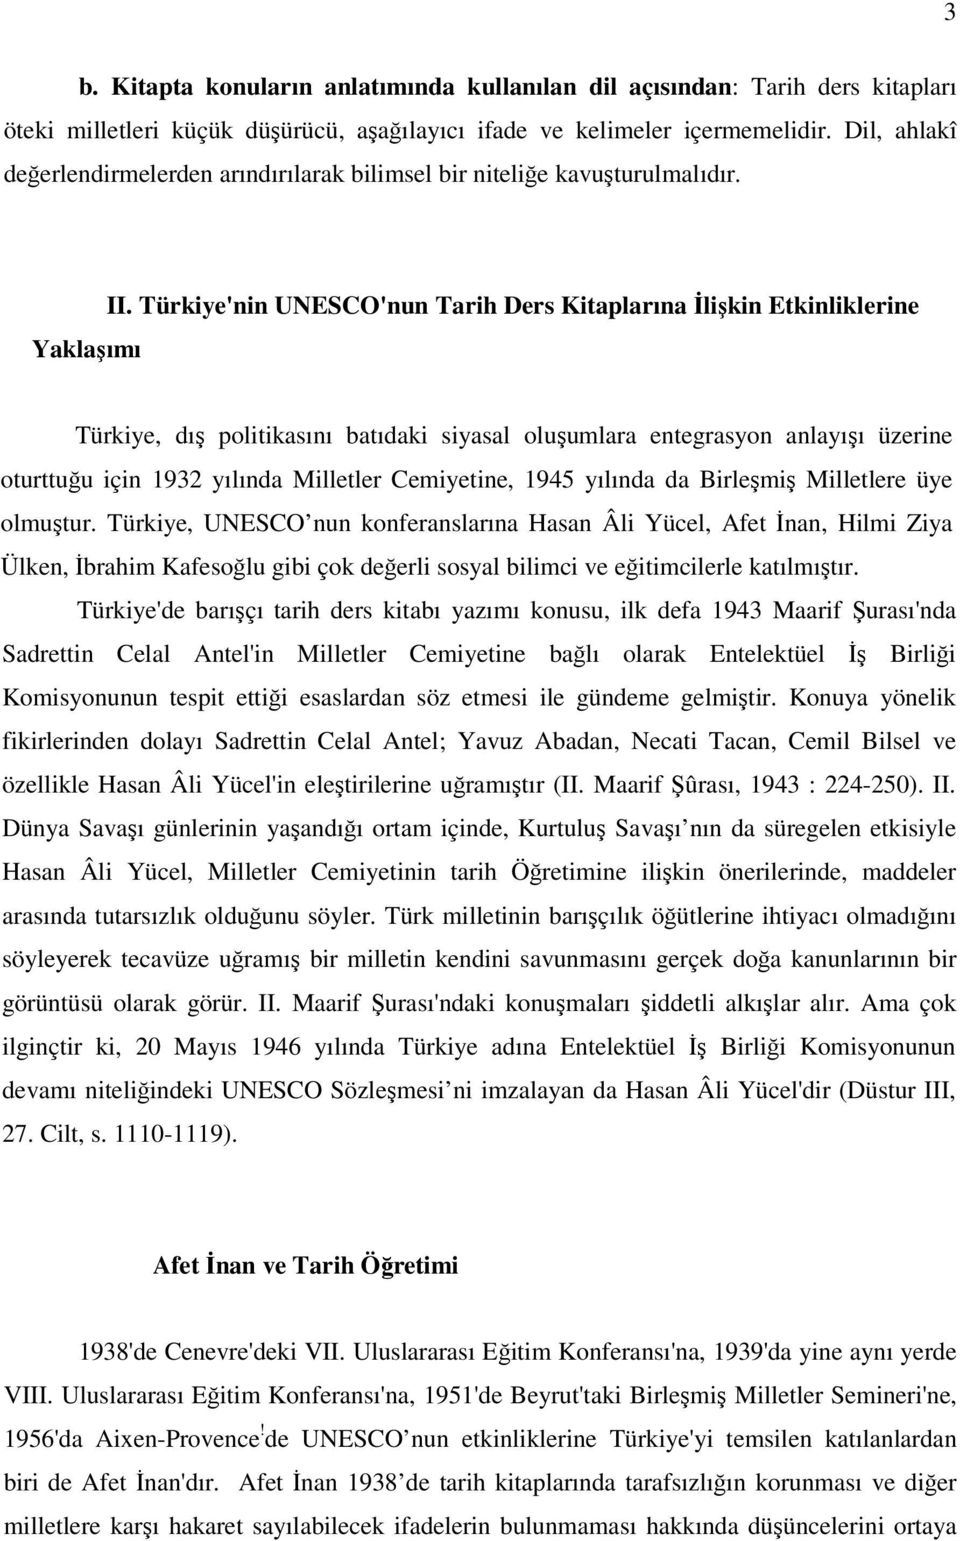 Türkiye'nin UNESCO'nun Tarih Ders Kitaplarına İlişkin Etkinliklerine Türkiye, dış politikasını batıdaki siyasal oluşumlara entegrasyon anlayışı üzerine oturttuğu için 1932 yılında Milletler